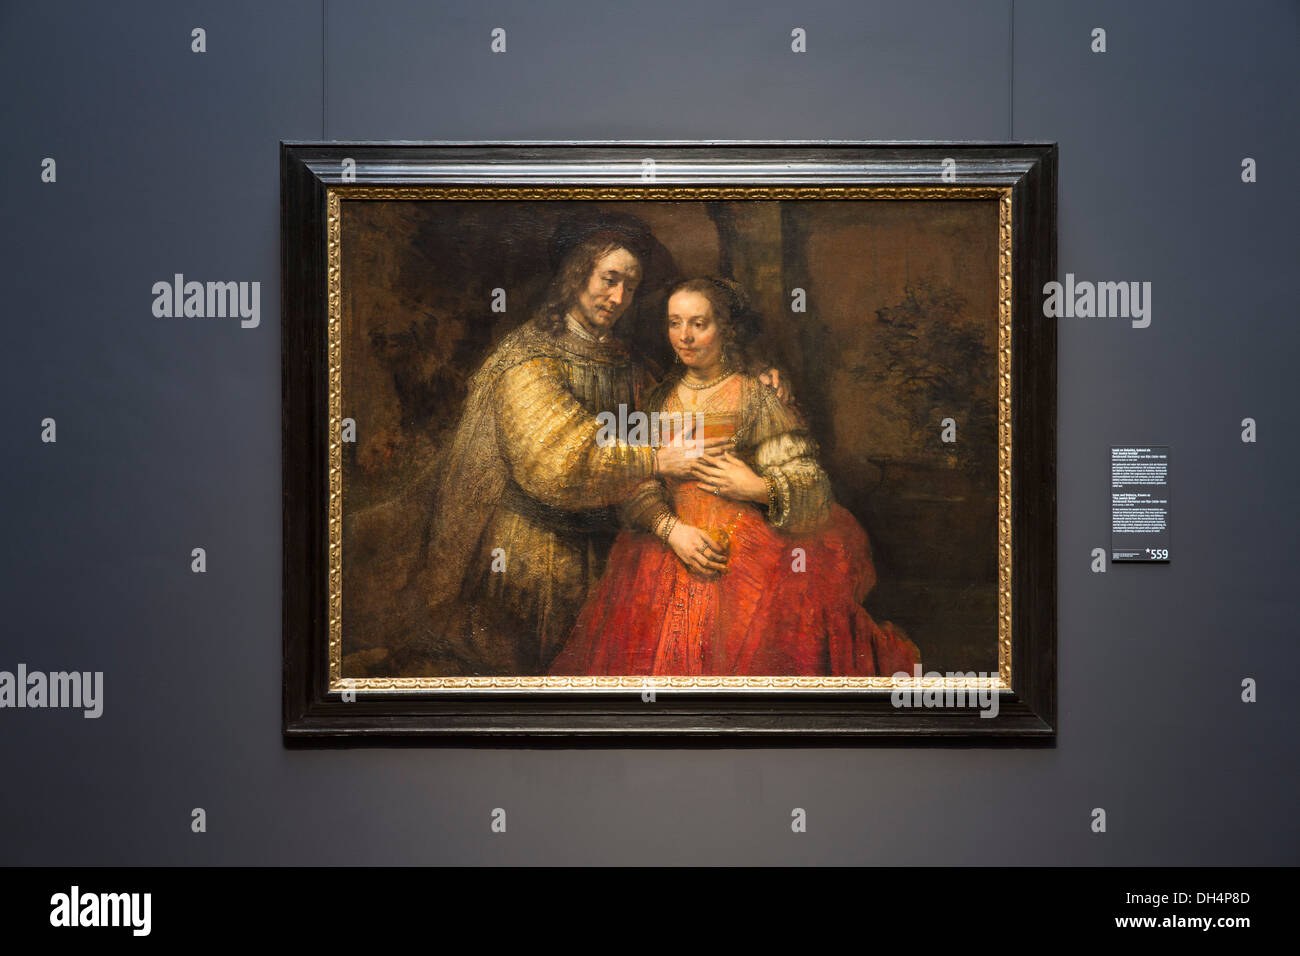 Paesi Bassi, Amsterdam, Rijksmuseum. Isacco e Rebecca, nome popolare, la Sposa ebraica, Rembrandt van Rijn, ca. 1665 - ca. 1669 Foto Stock